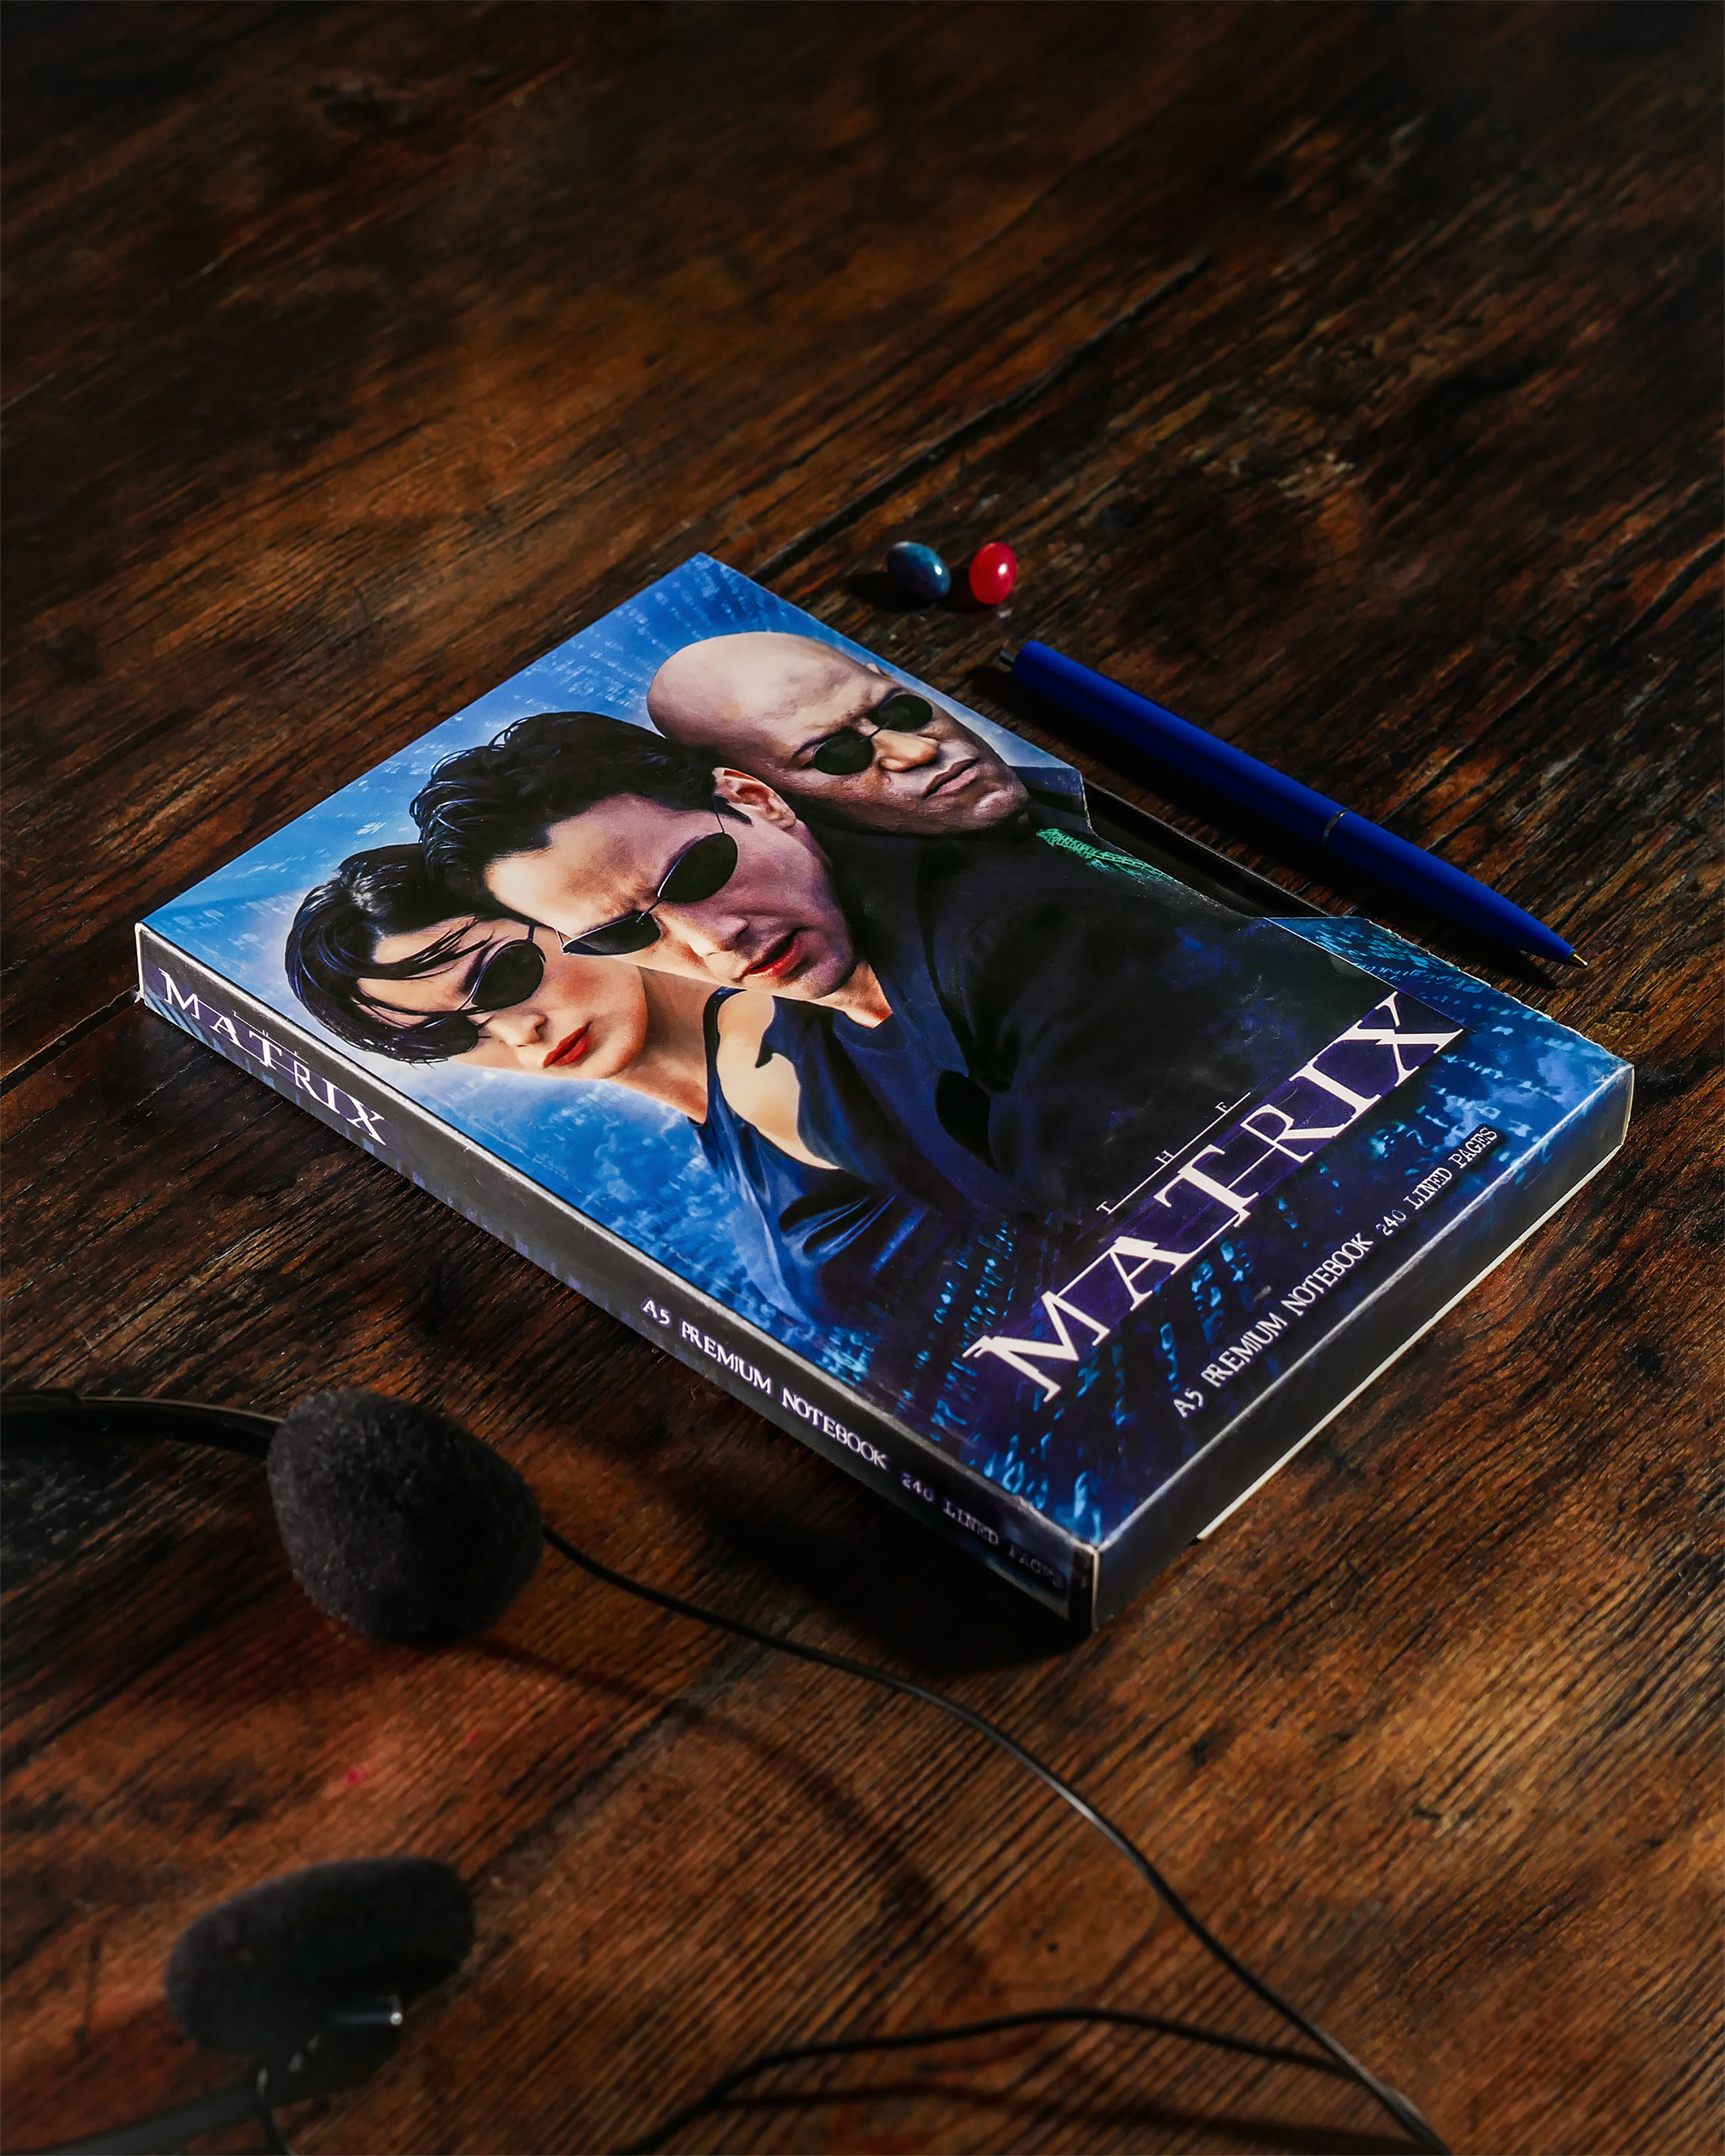 Matrix VHS Premium Notebook A5